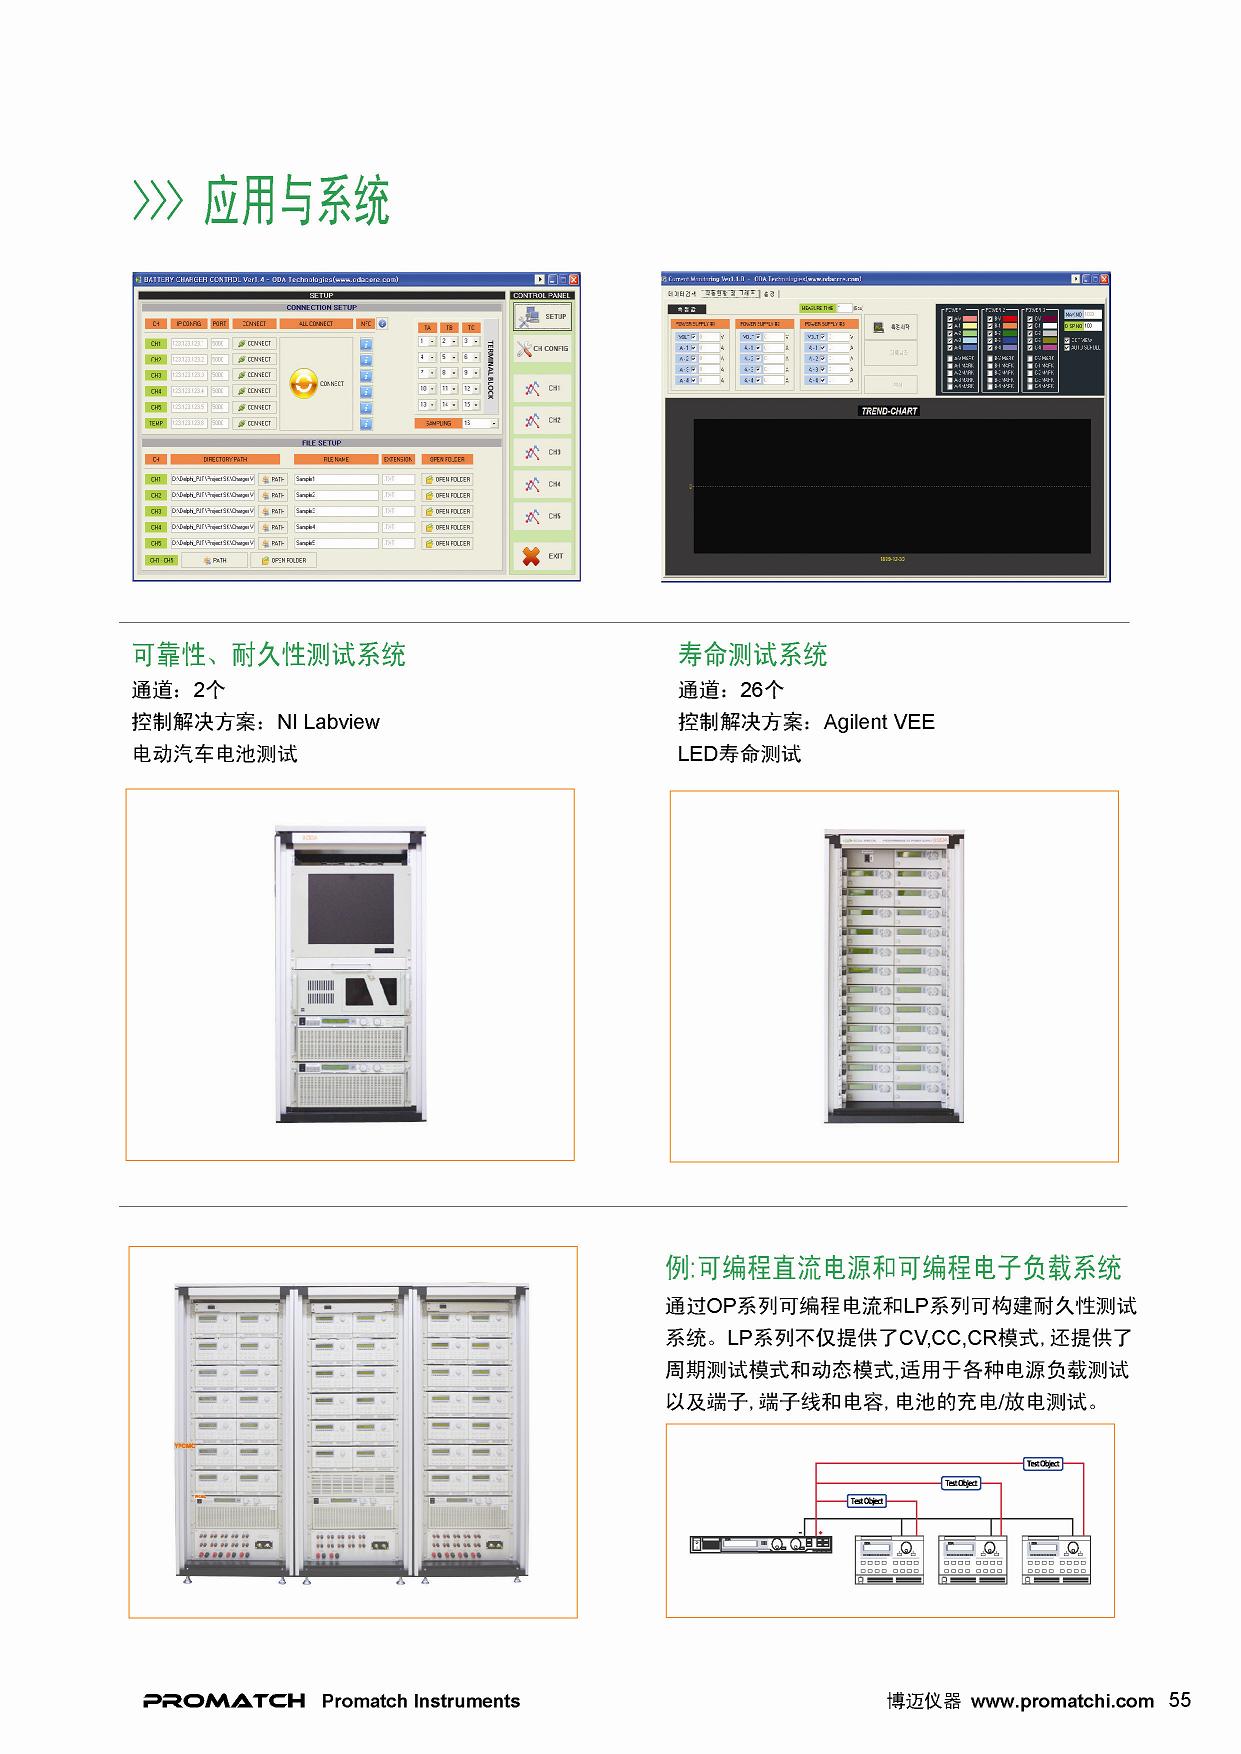 韩国ODA, OPX, 客户定制和综合测试系统,高功率LED可靠性测试系统,LED,LD,PD可靠性测试系统,DC-DC转换器可靠性老化测试系统